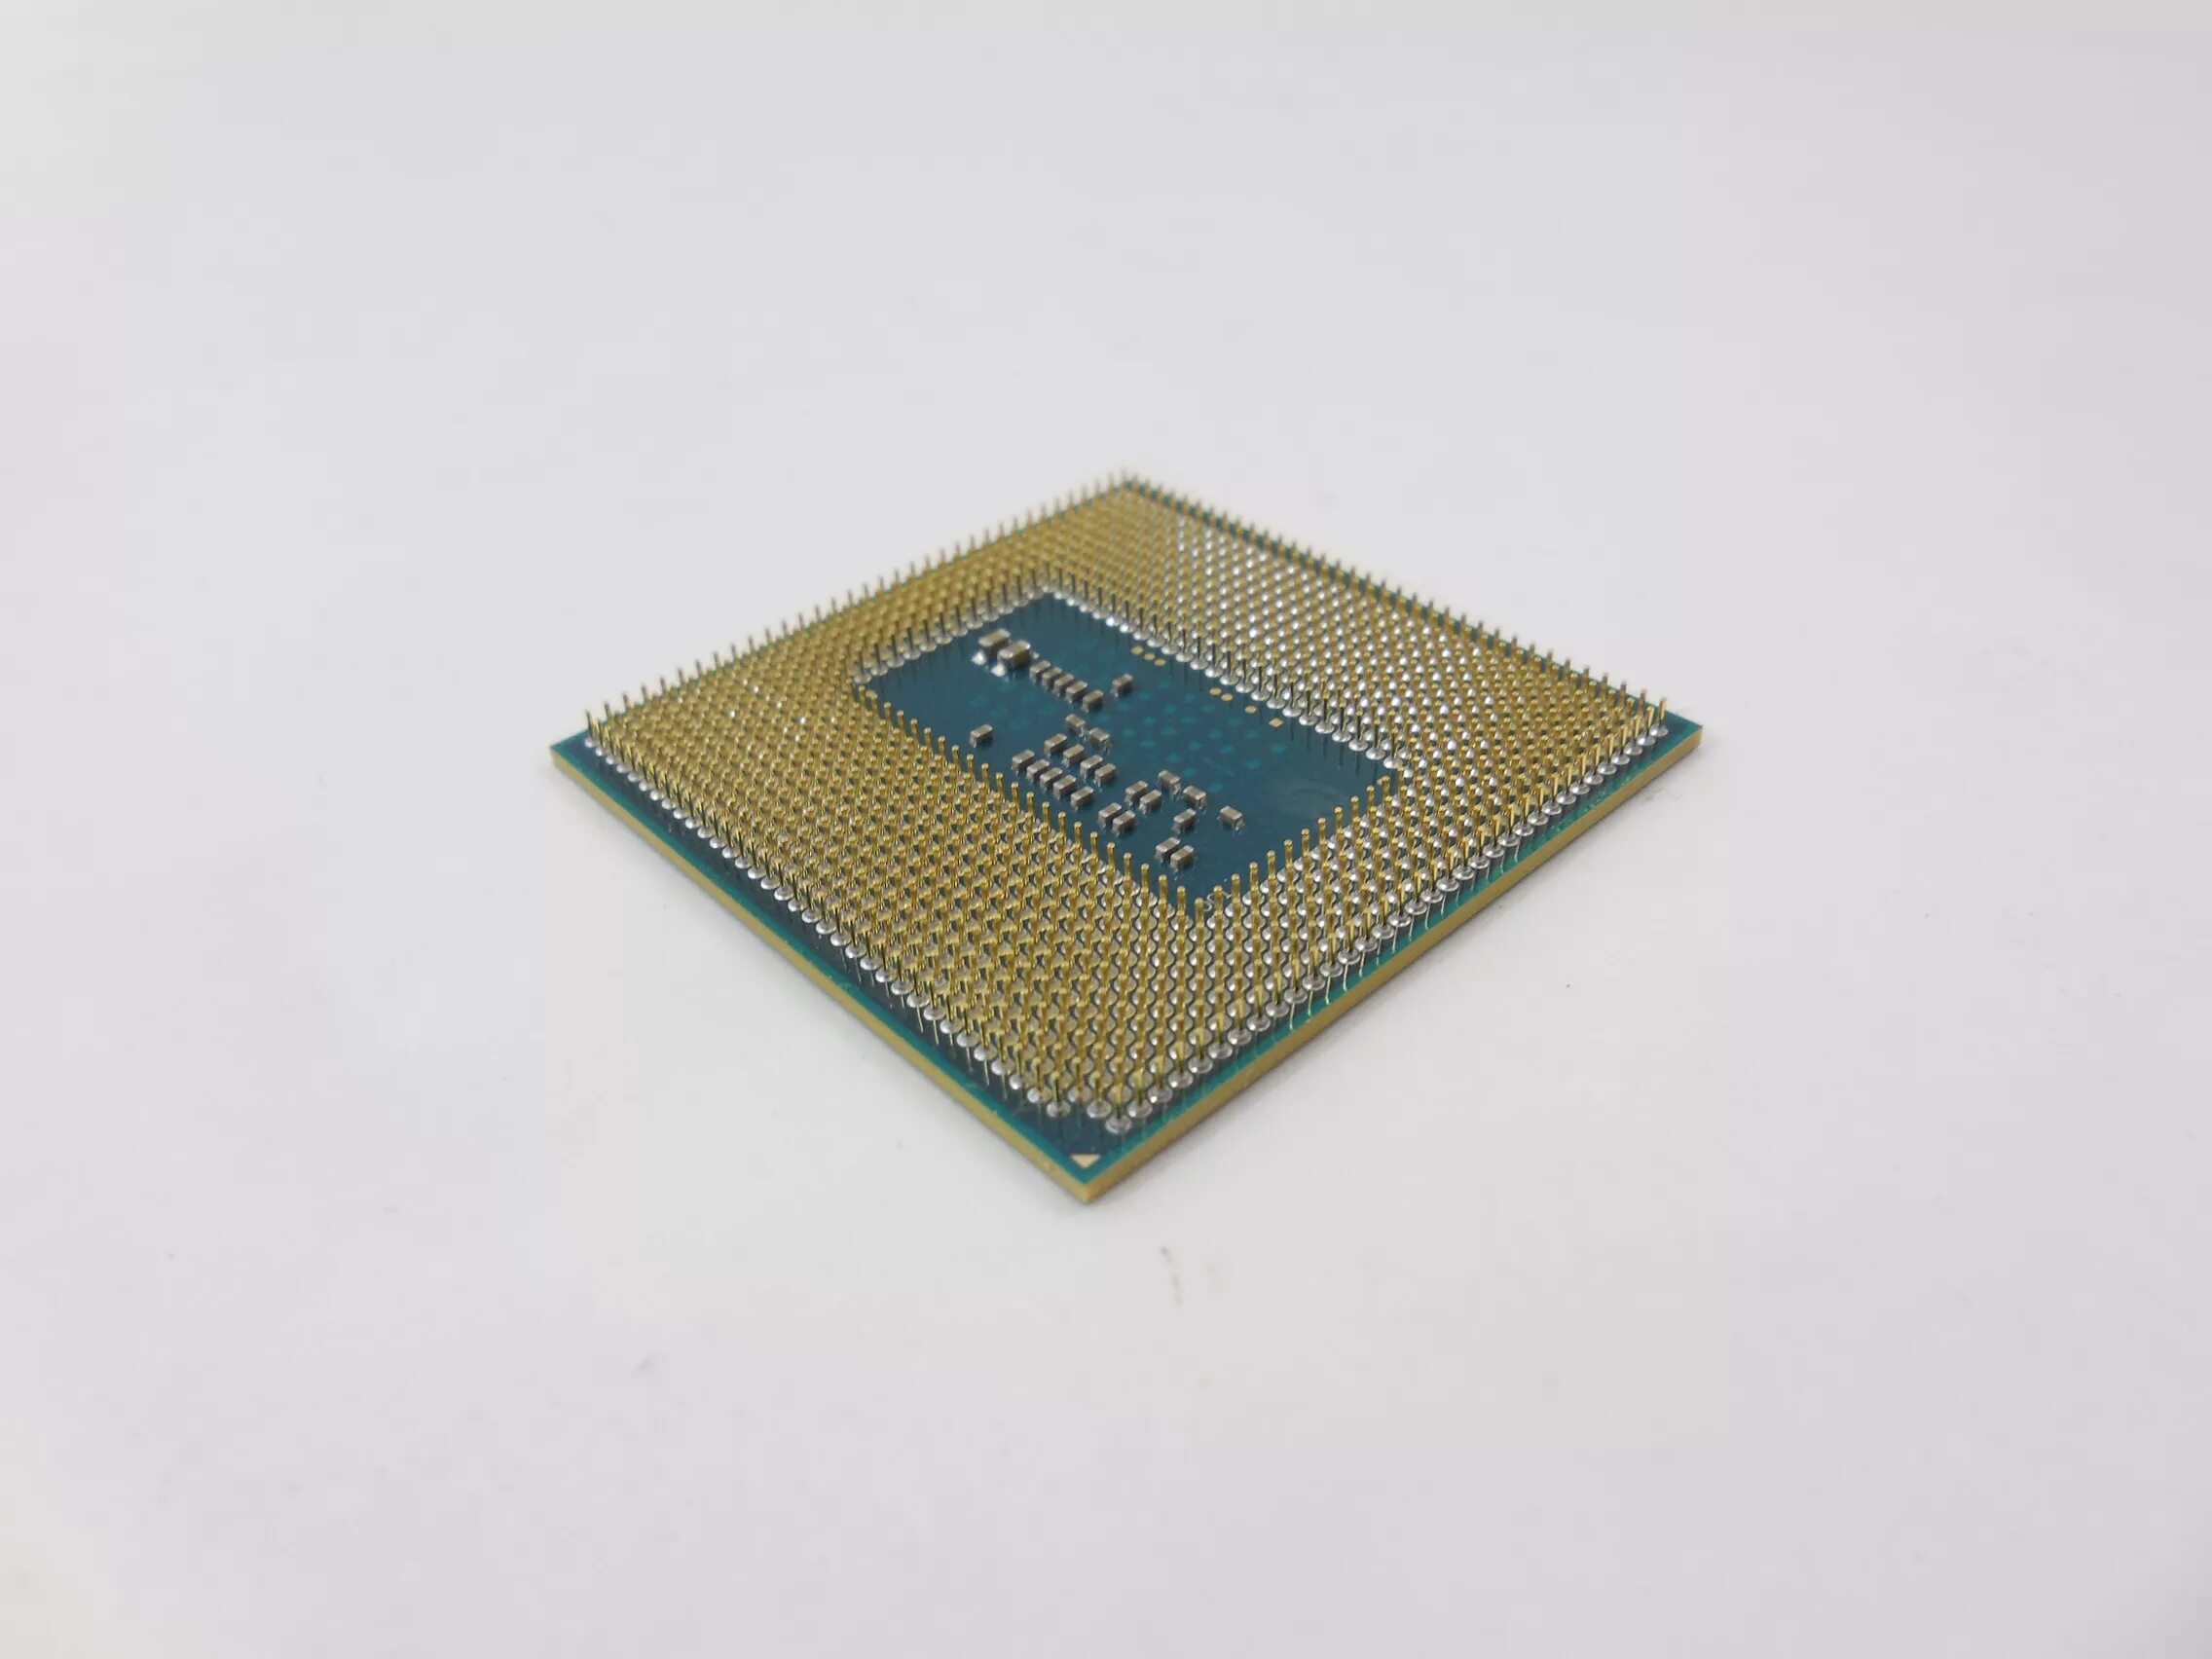 Intel Core i3 4000m. Core i3-4000m. Восьмиядерный Core i3. Intel Core i3 mobile 4000m.